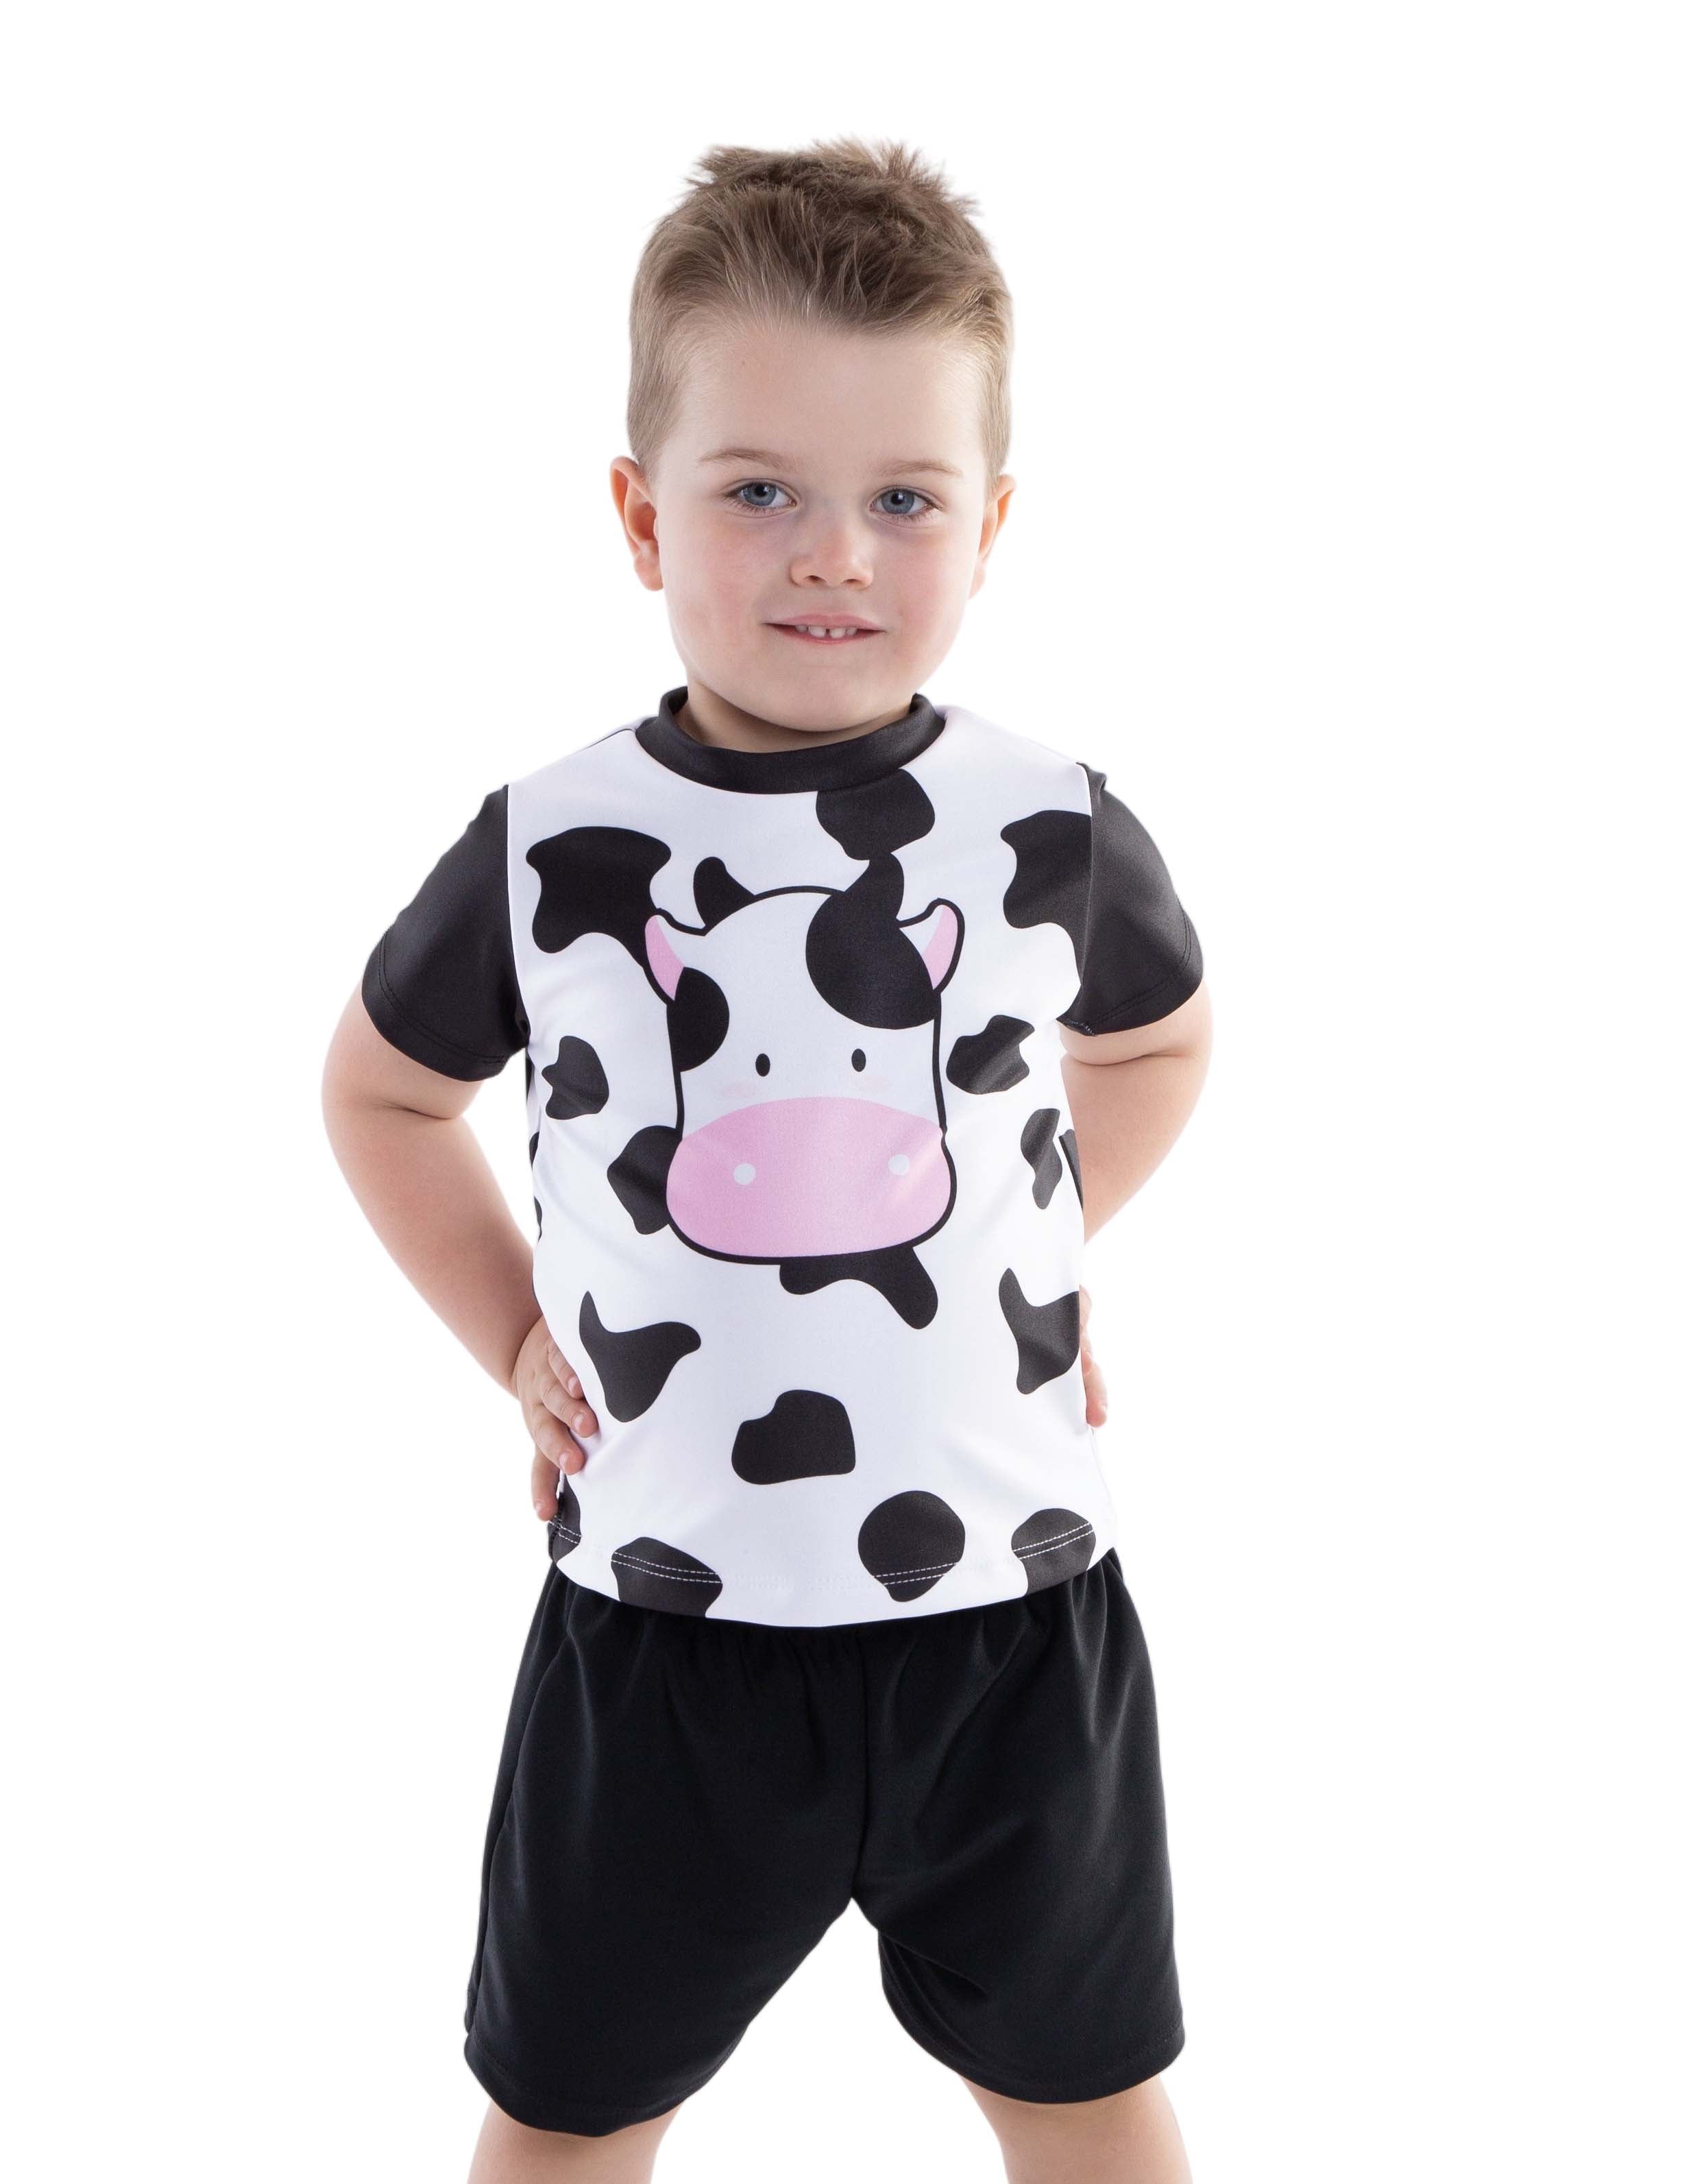 Barnyard Ballet Cow T-Shirt